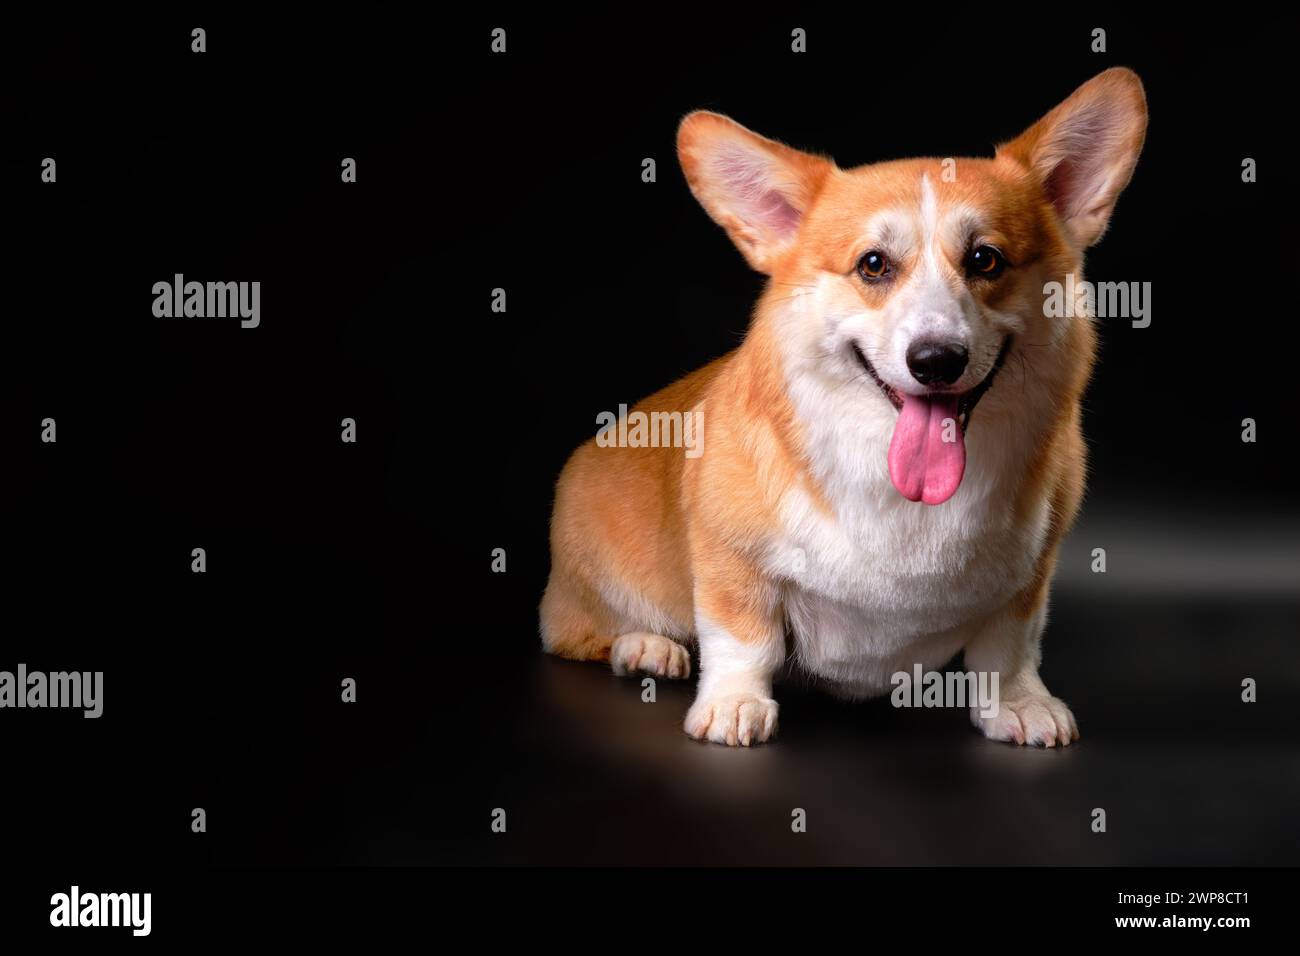 Der walisische Corgi-Hund, der vor der Kamera sitzt, schaut direkt auf das Objekt. Studiofoto Stockfoto